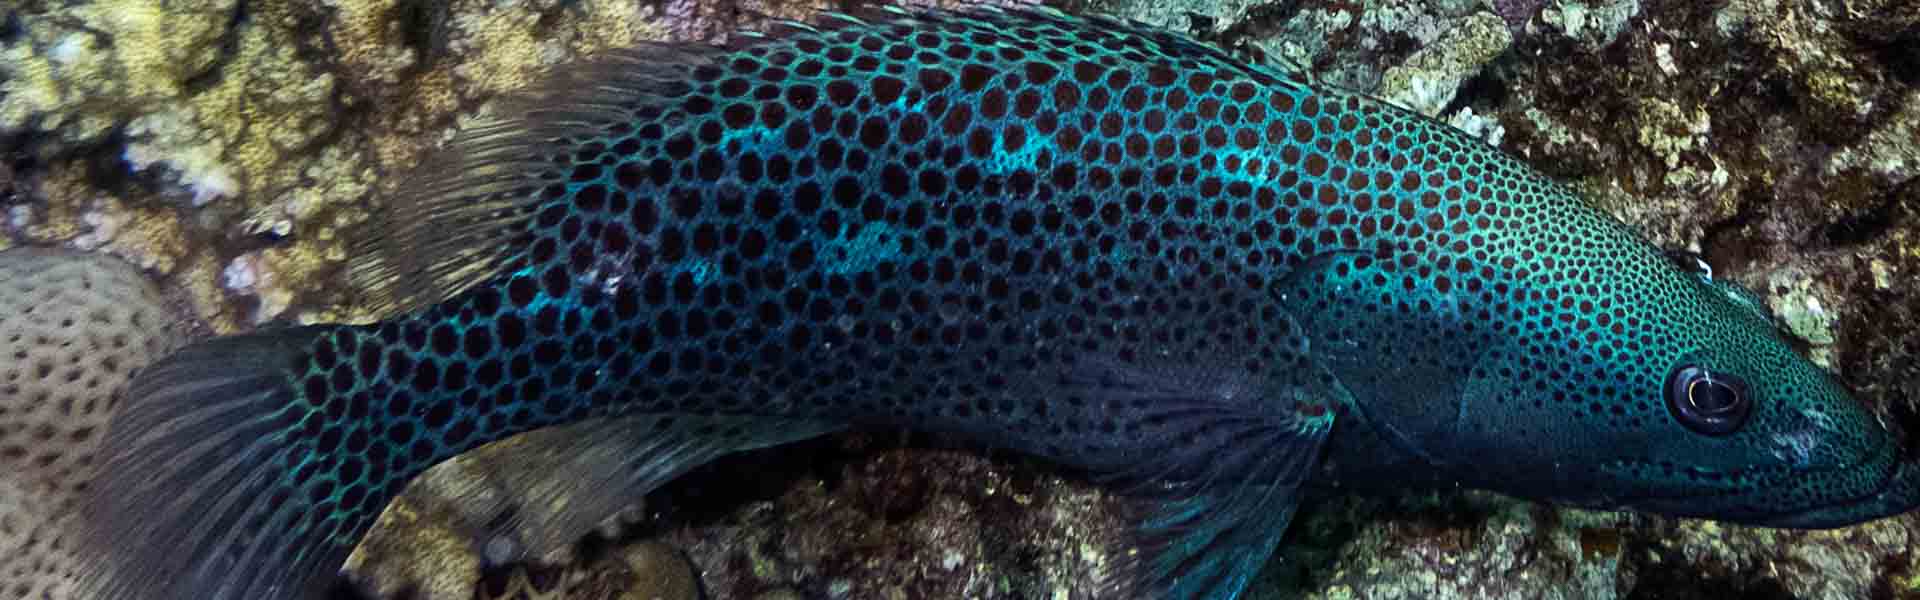 the-slender-grouper